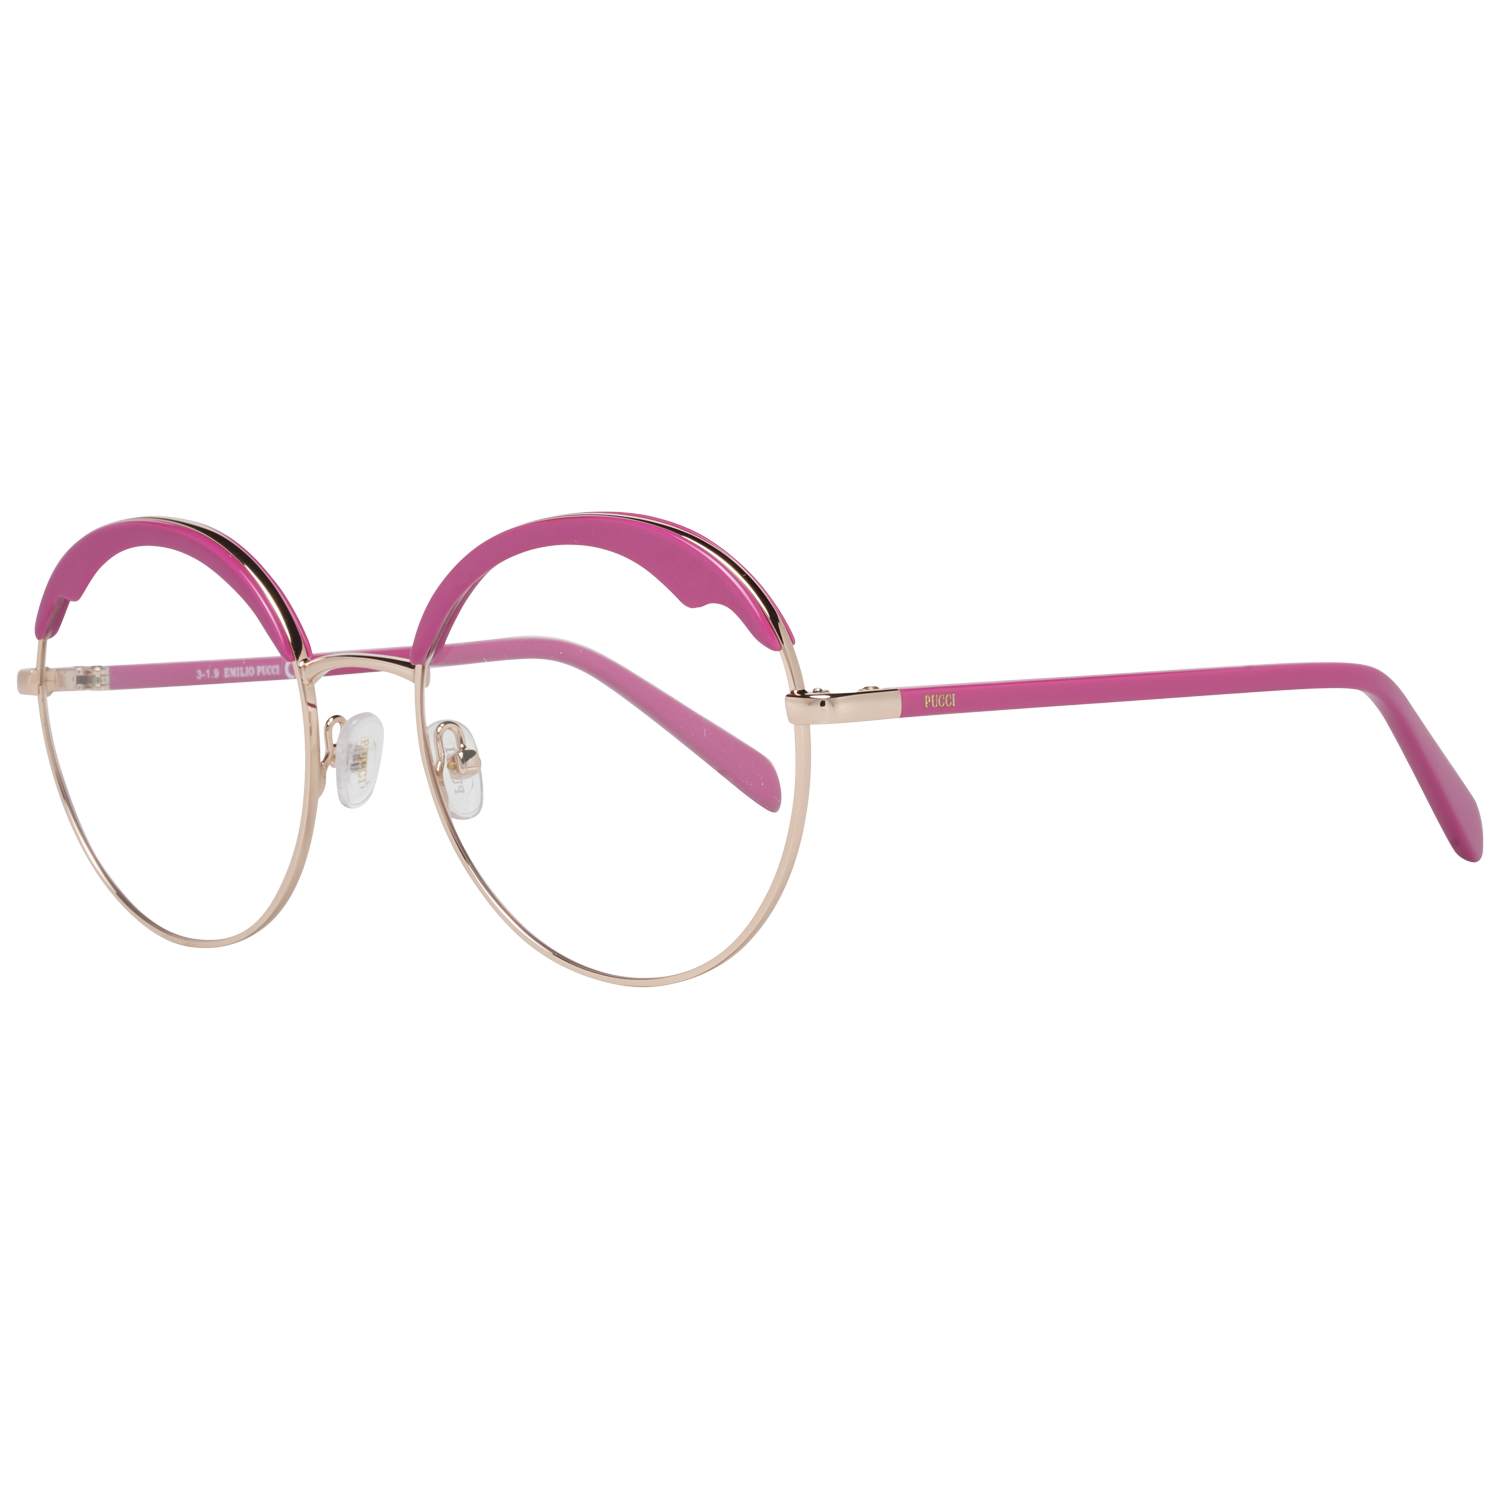 Emilio Pucci Frames Emilio Pucci Optical Frame EP5130 028 54 Eyeglasses Eyewear UK USA Australia 